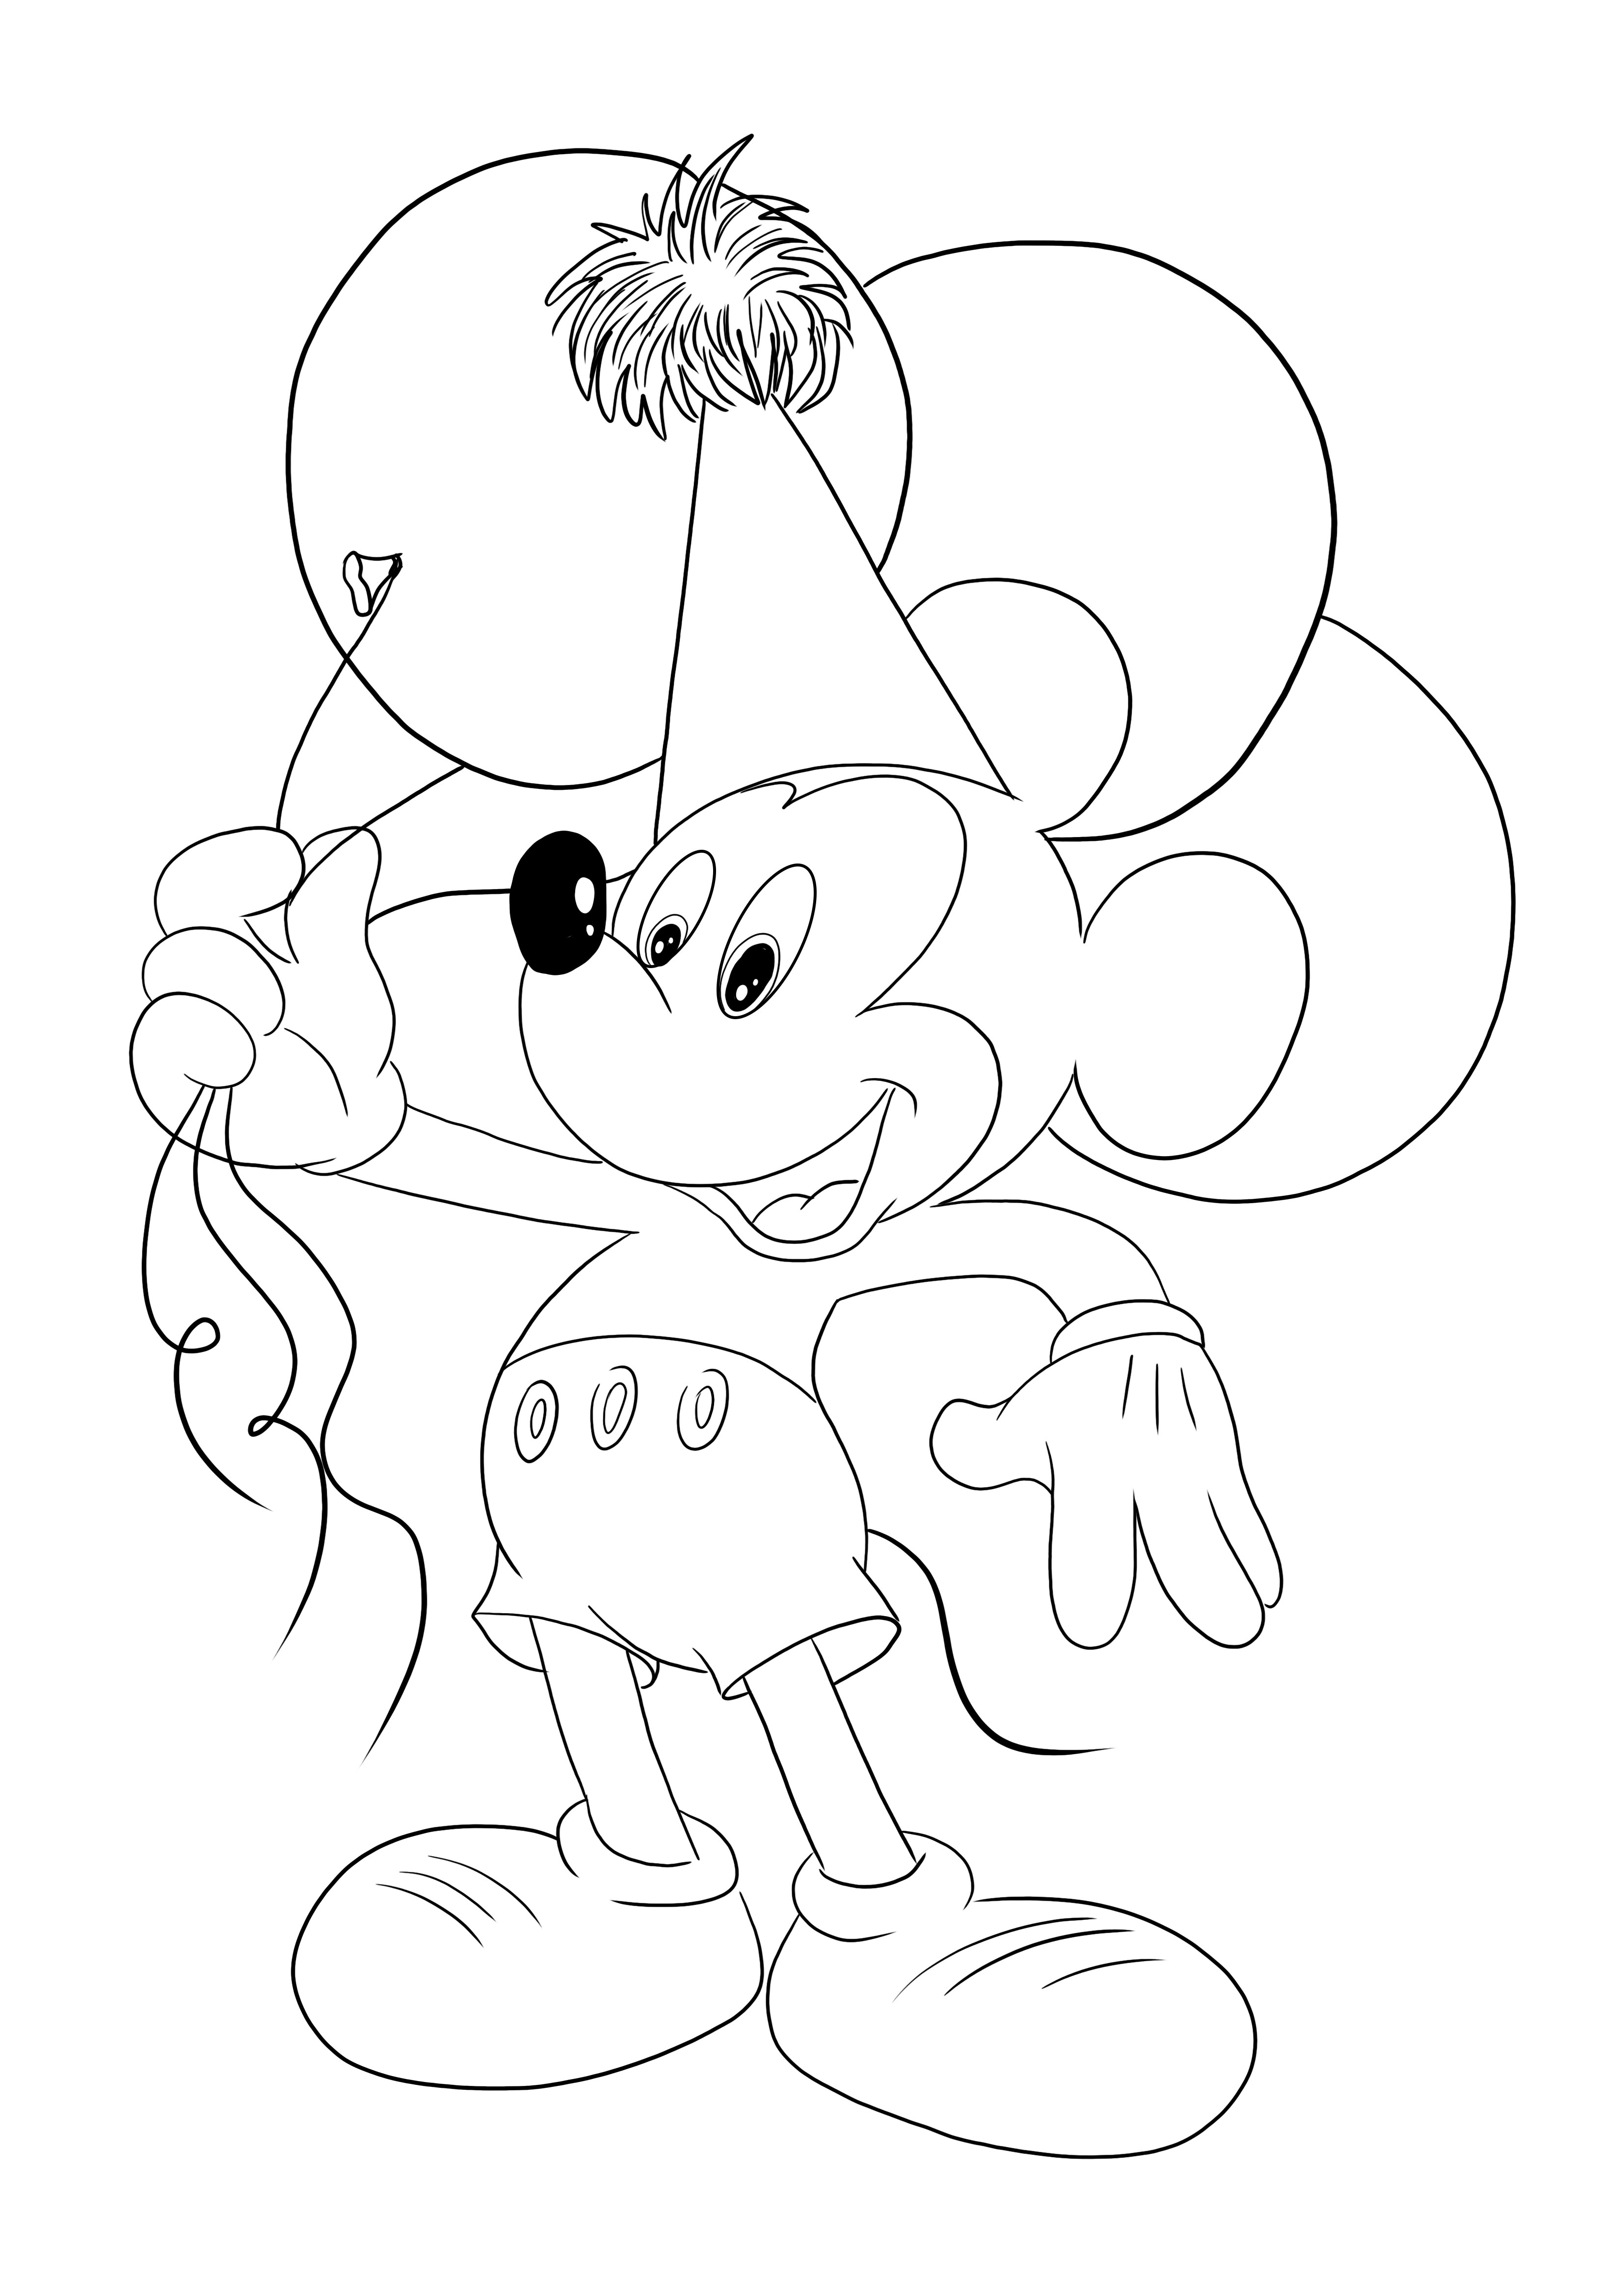 Myszka Miki z balonami, którą dzieci mogą łatwo wydrukować i pokolorować